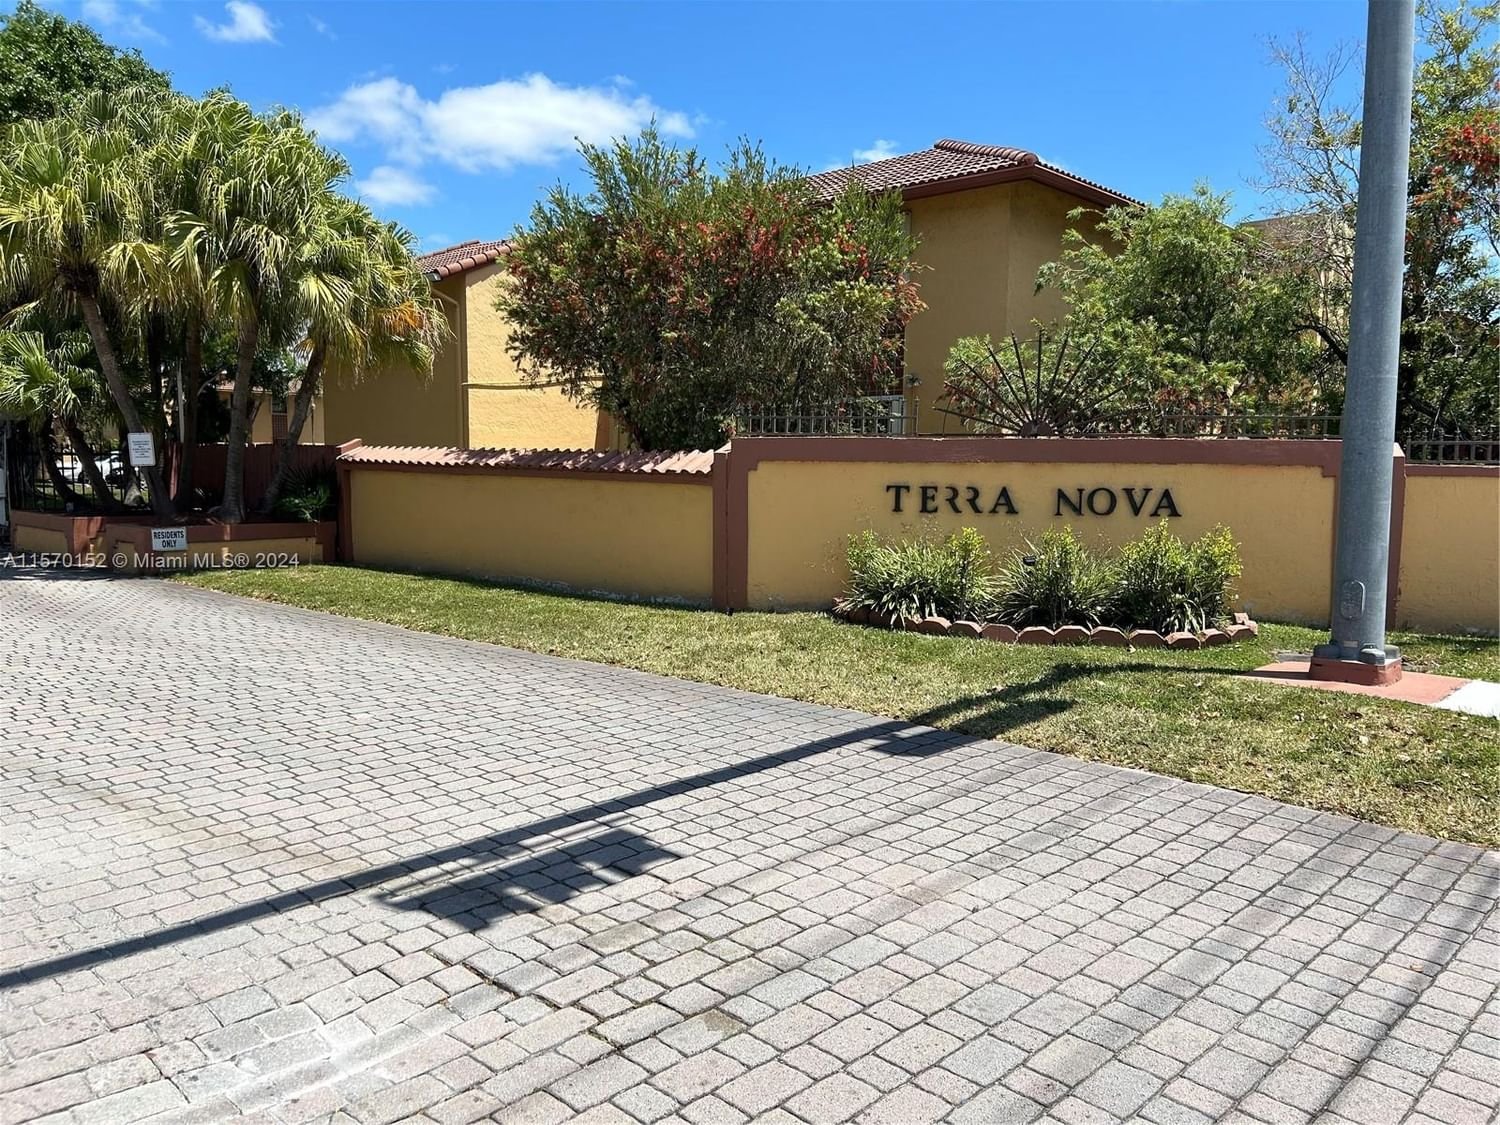 Real estate property located at 10845 7th St #22-15, Miami-Dade County, TERRANOVA CONDO #5, Miami, FL